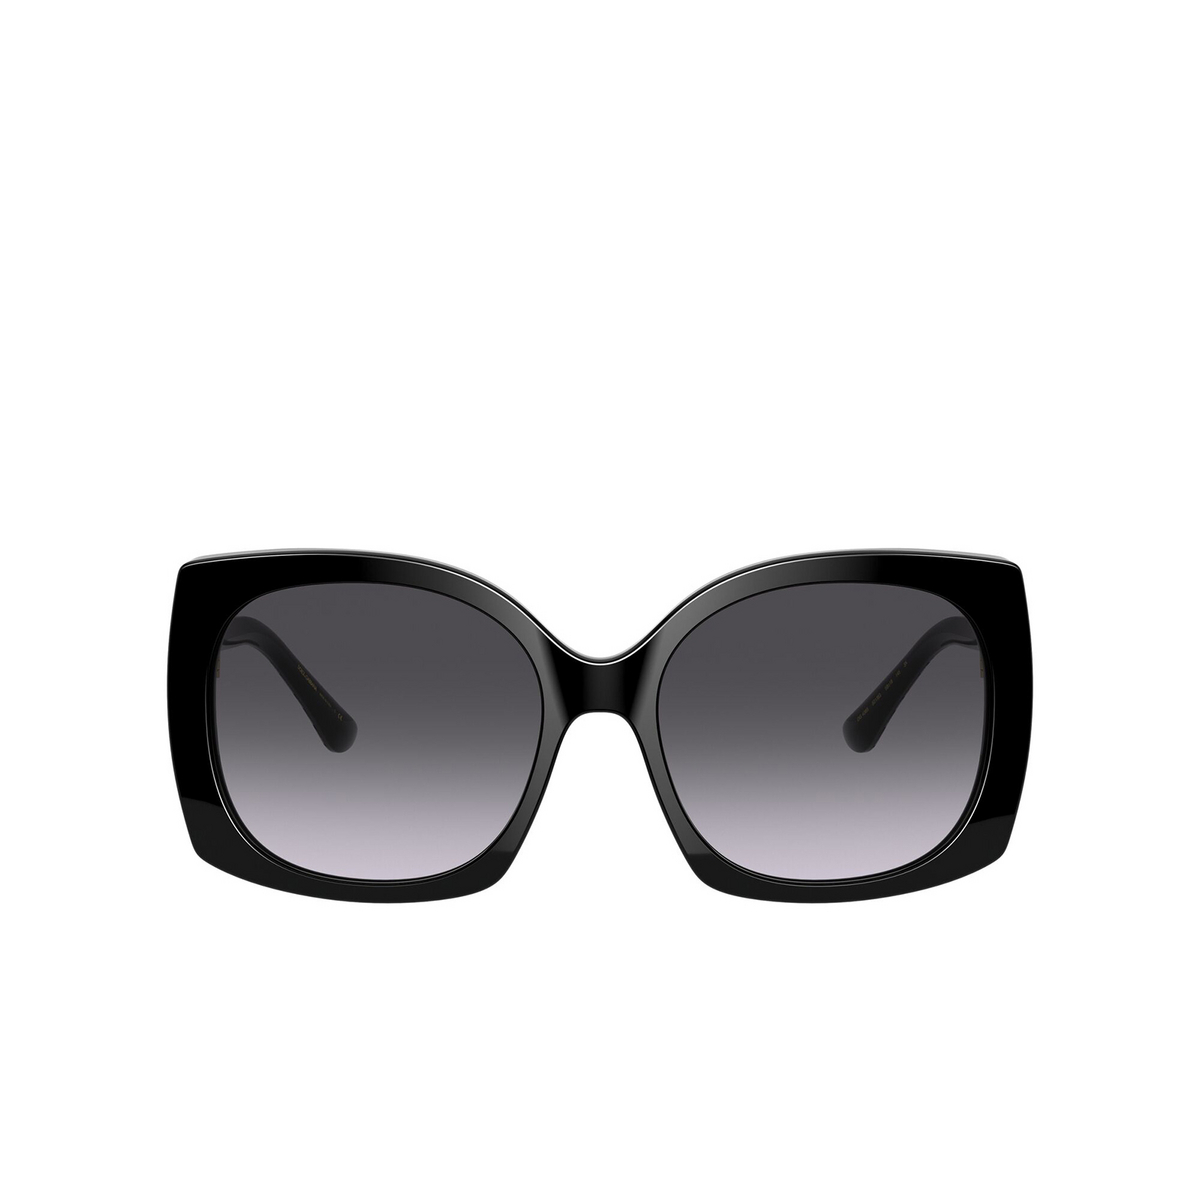 Dolce & Gabbana® Square Sunglasses: DG4385 color Black 501/8G - front view.